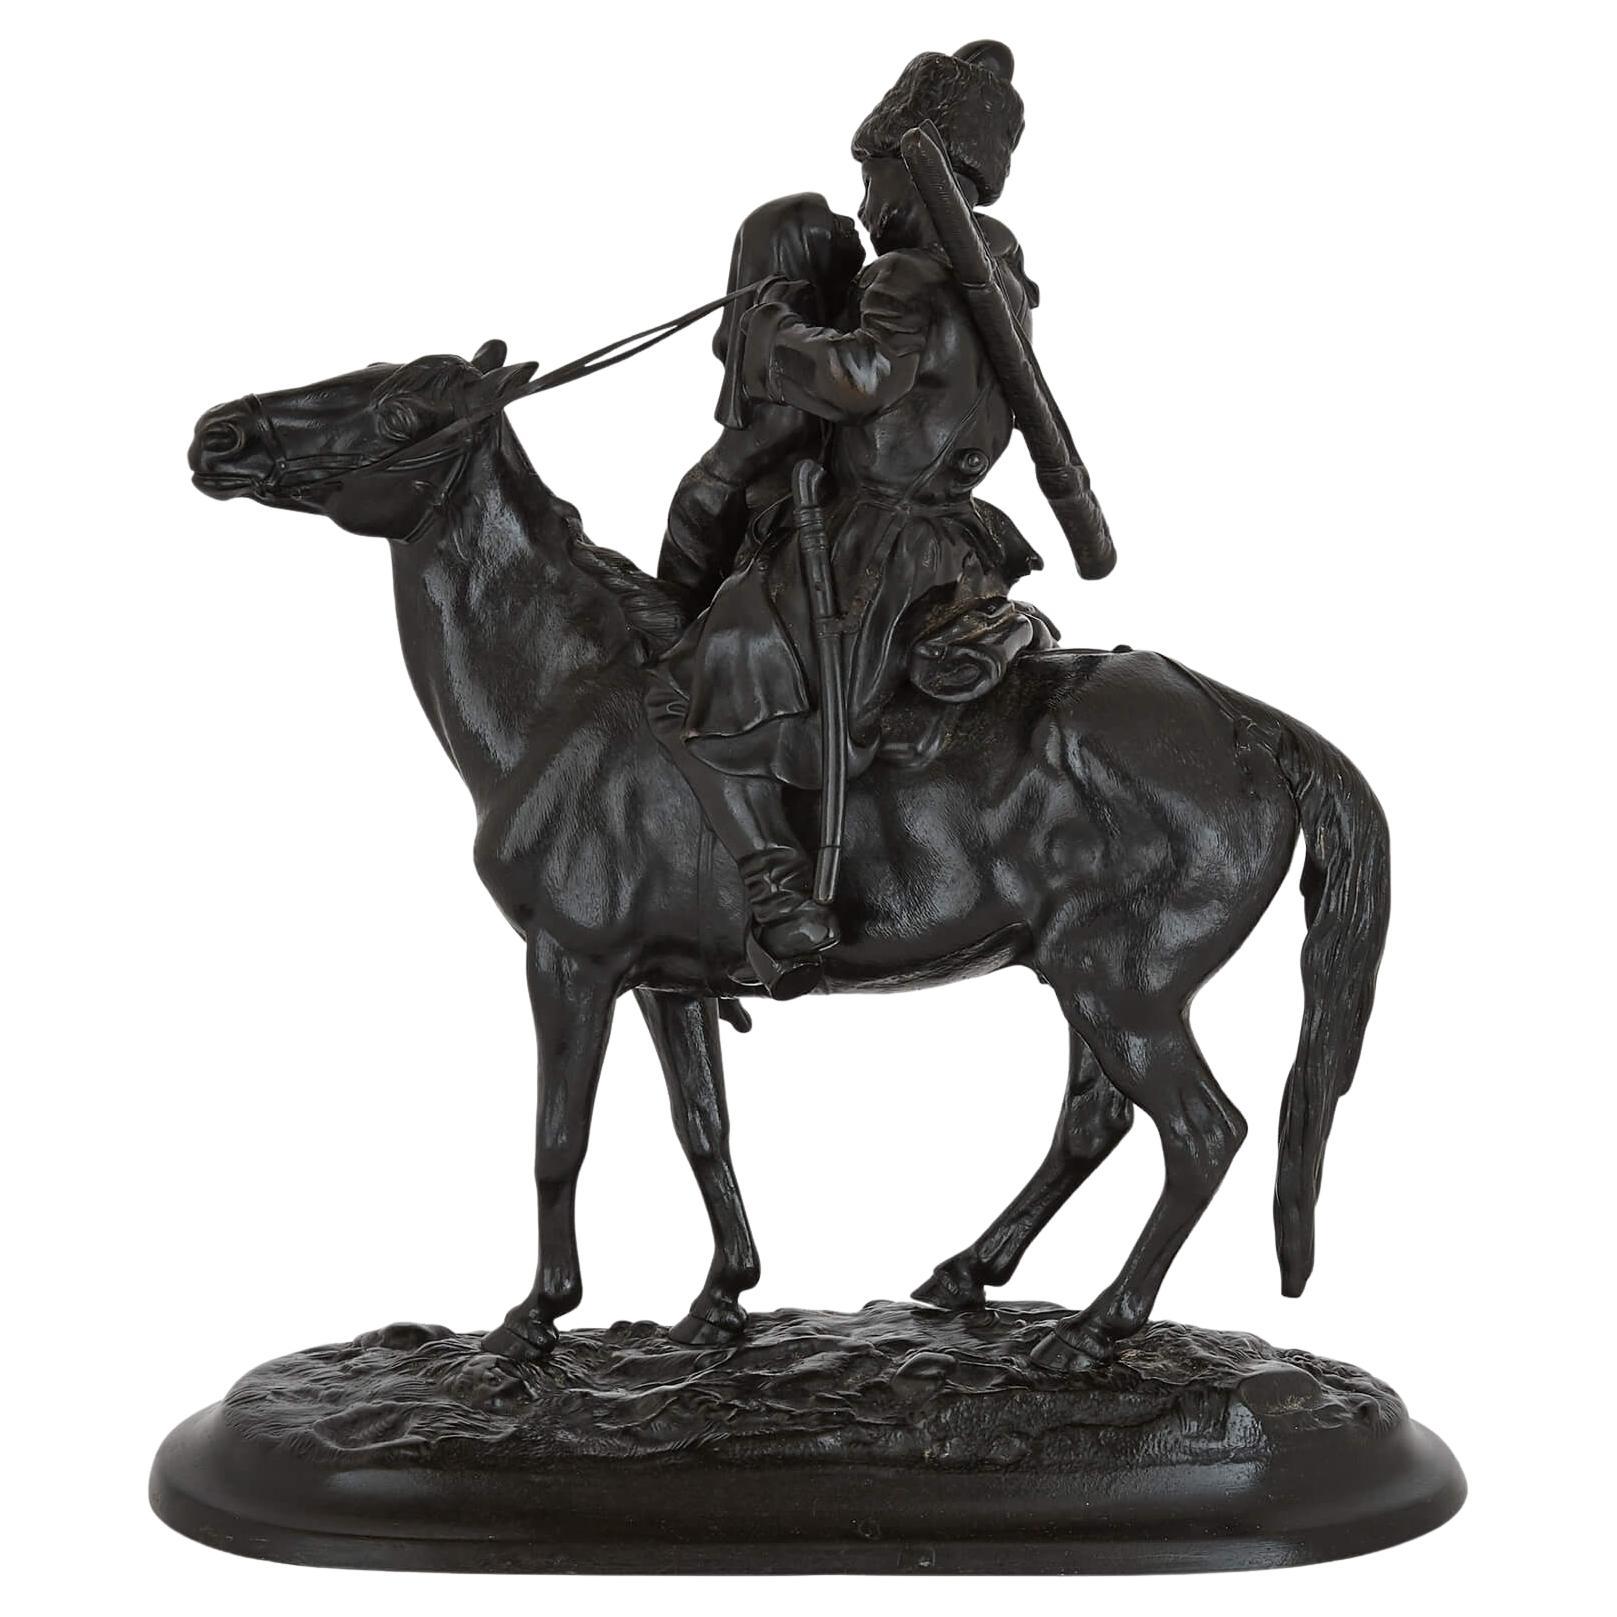 Russian iron sculpture of a Cossack horseman